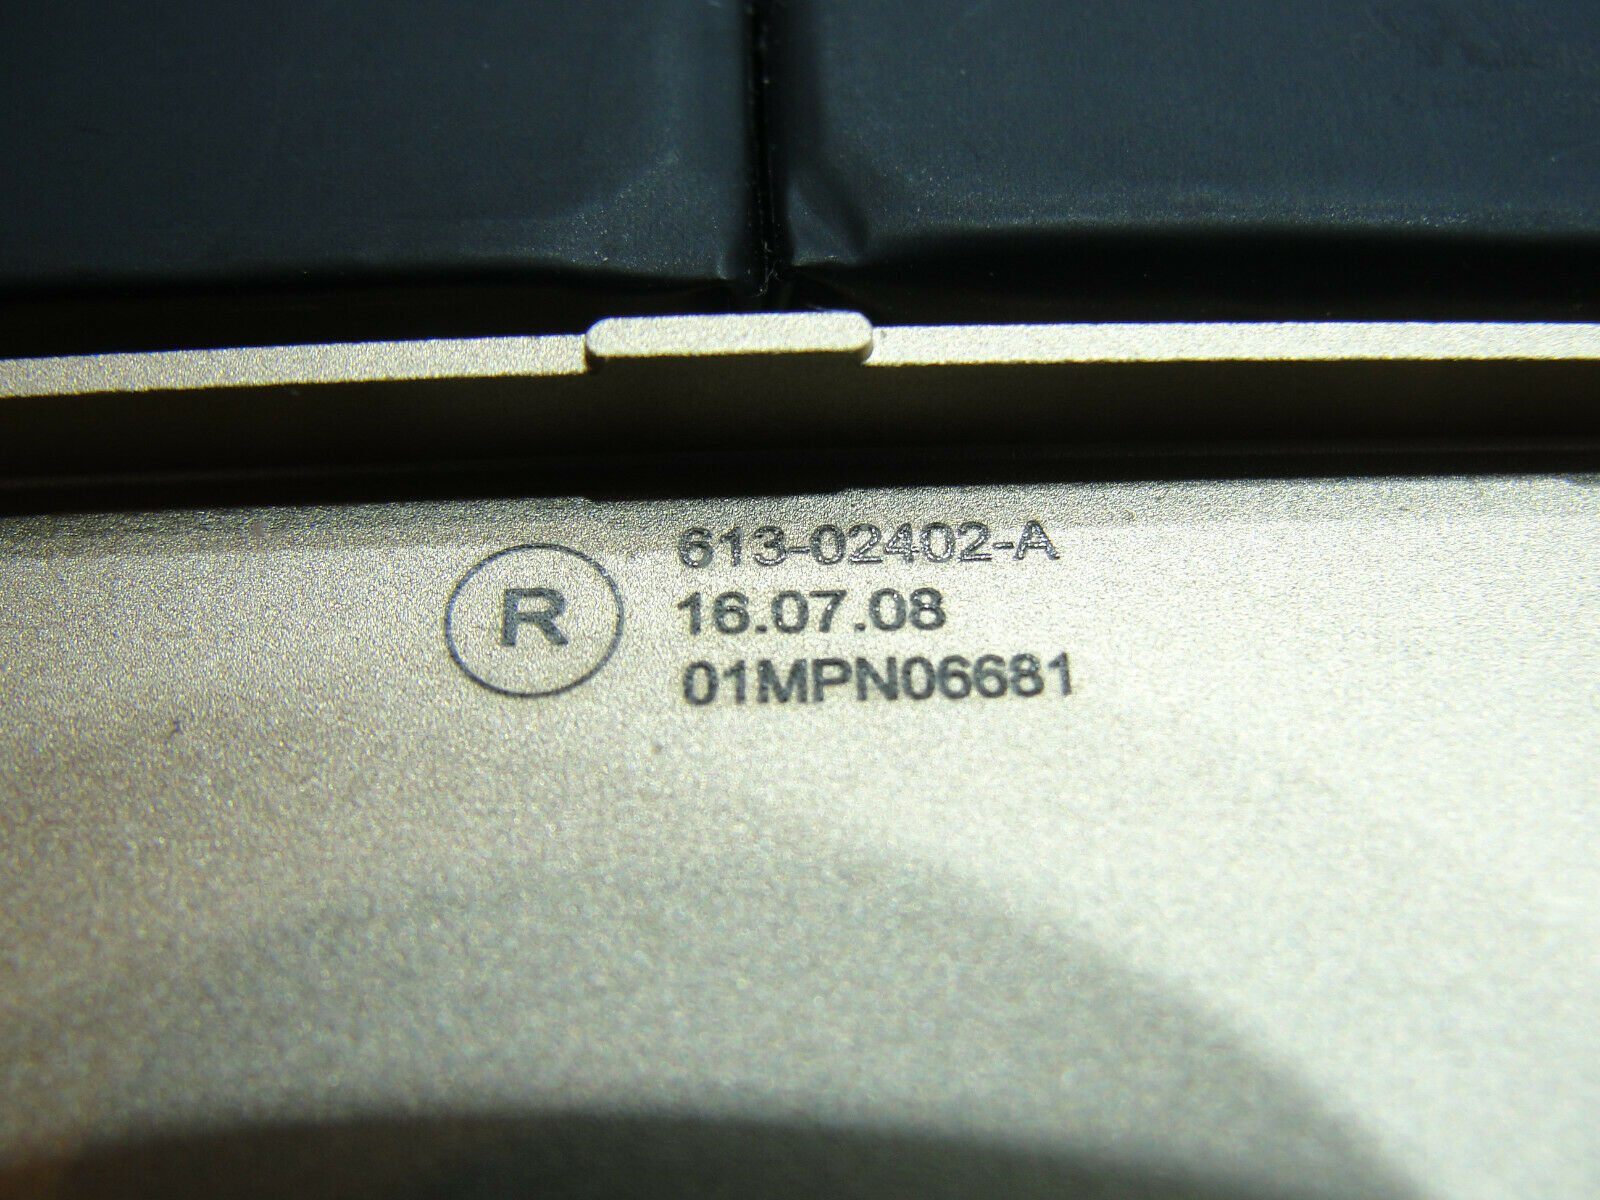 MacBook A1534 12